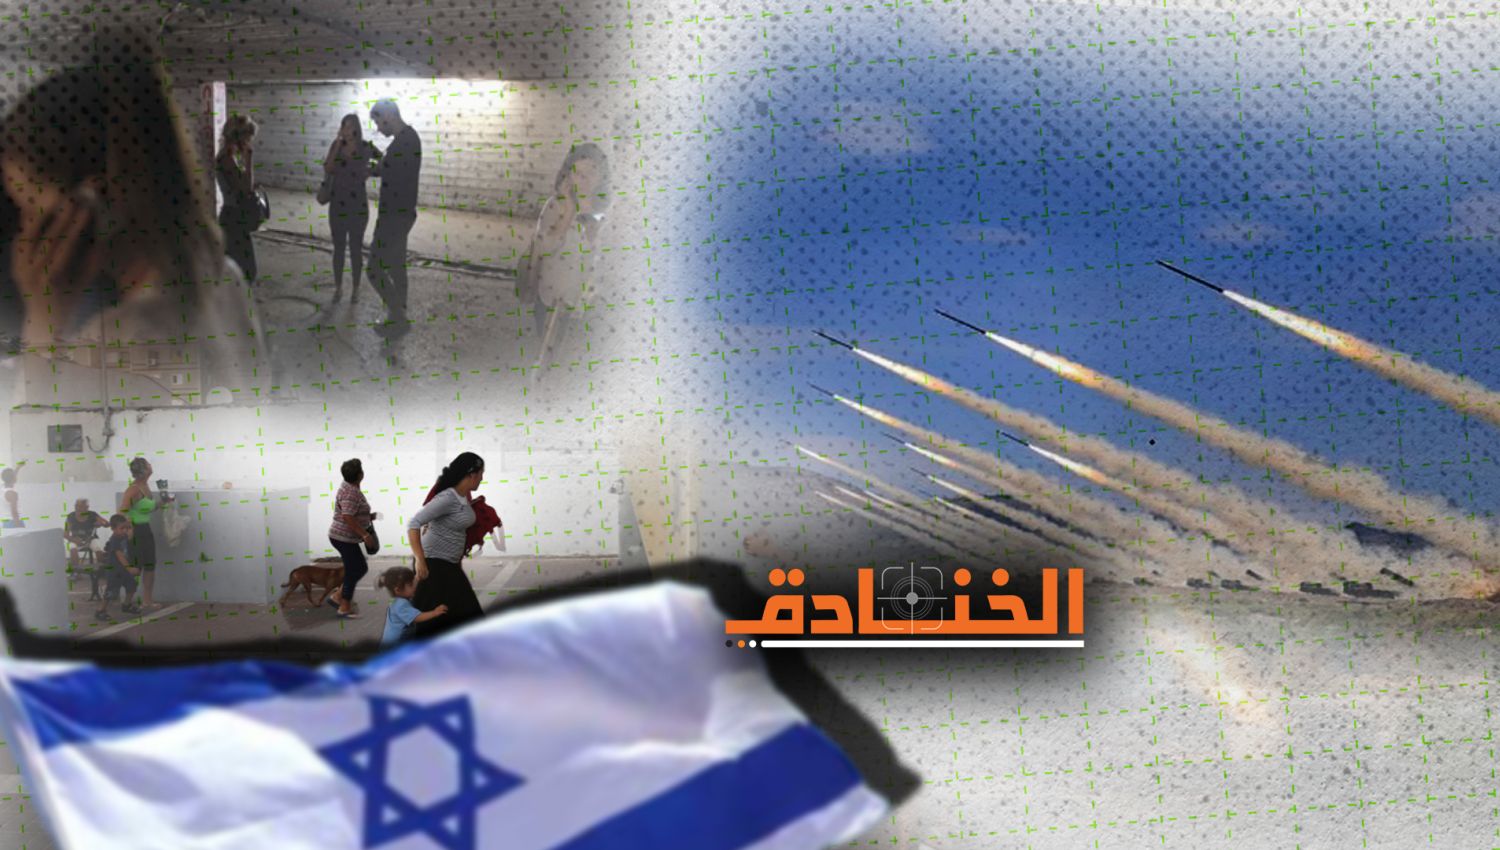 إسرائيل هيوم: إسرائيل مهددة بأكثر من 100 ألف صاروخ من لبنان